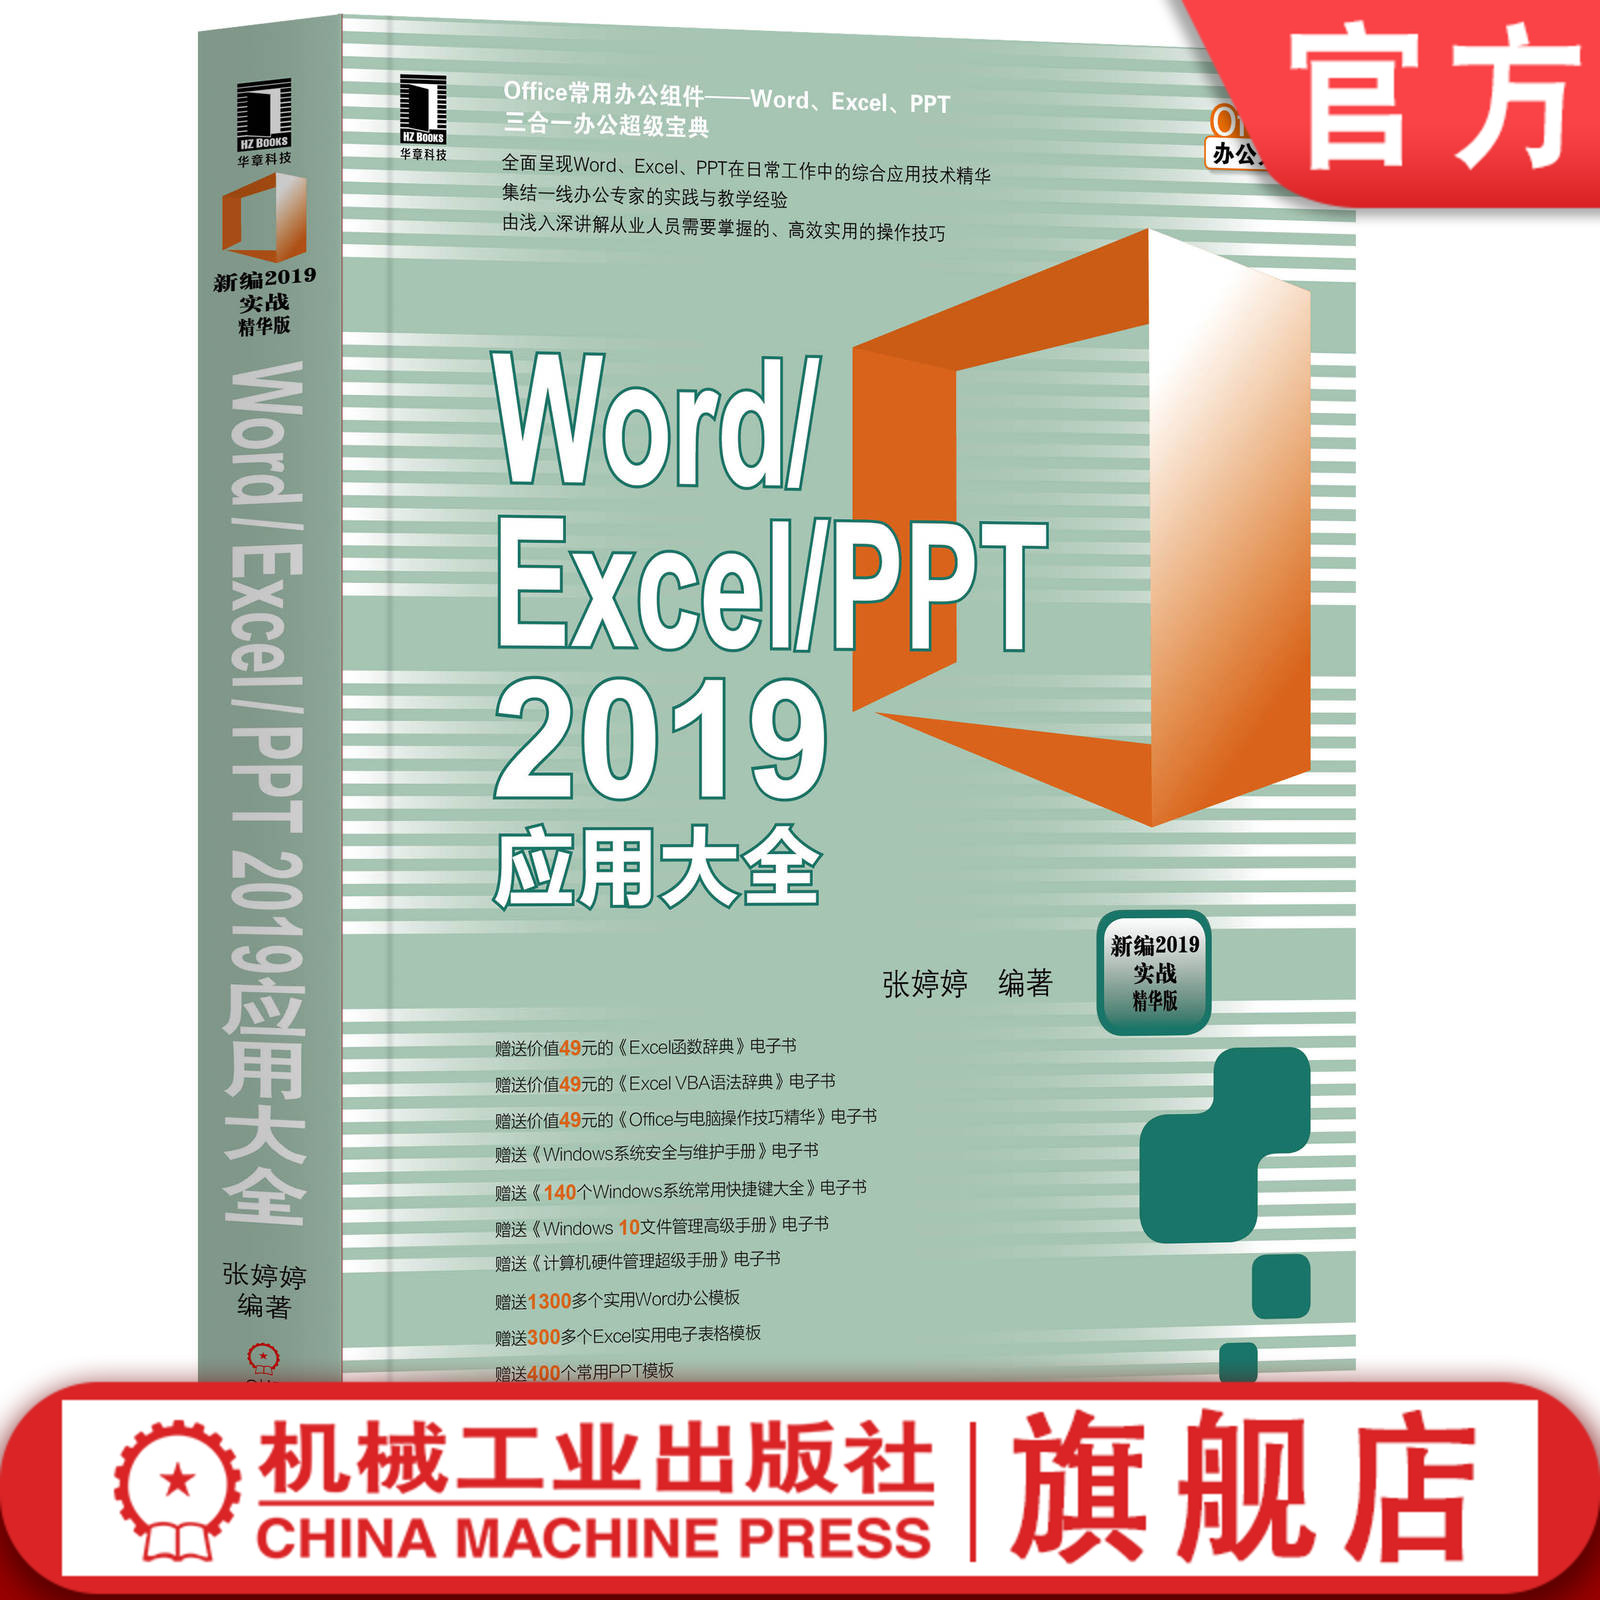 官网正版 Word Excel PPT 2019应用大全 张婷婷 文本编辑 格式编排 图文混排 表格 图表编辑 页面美化规范 文档审阅打印